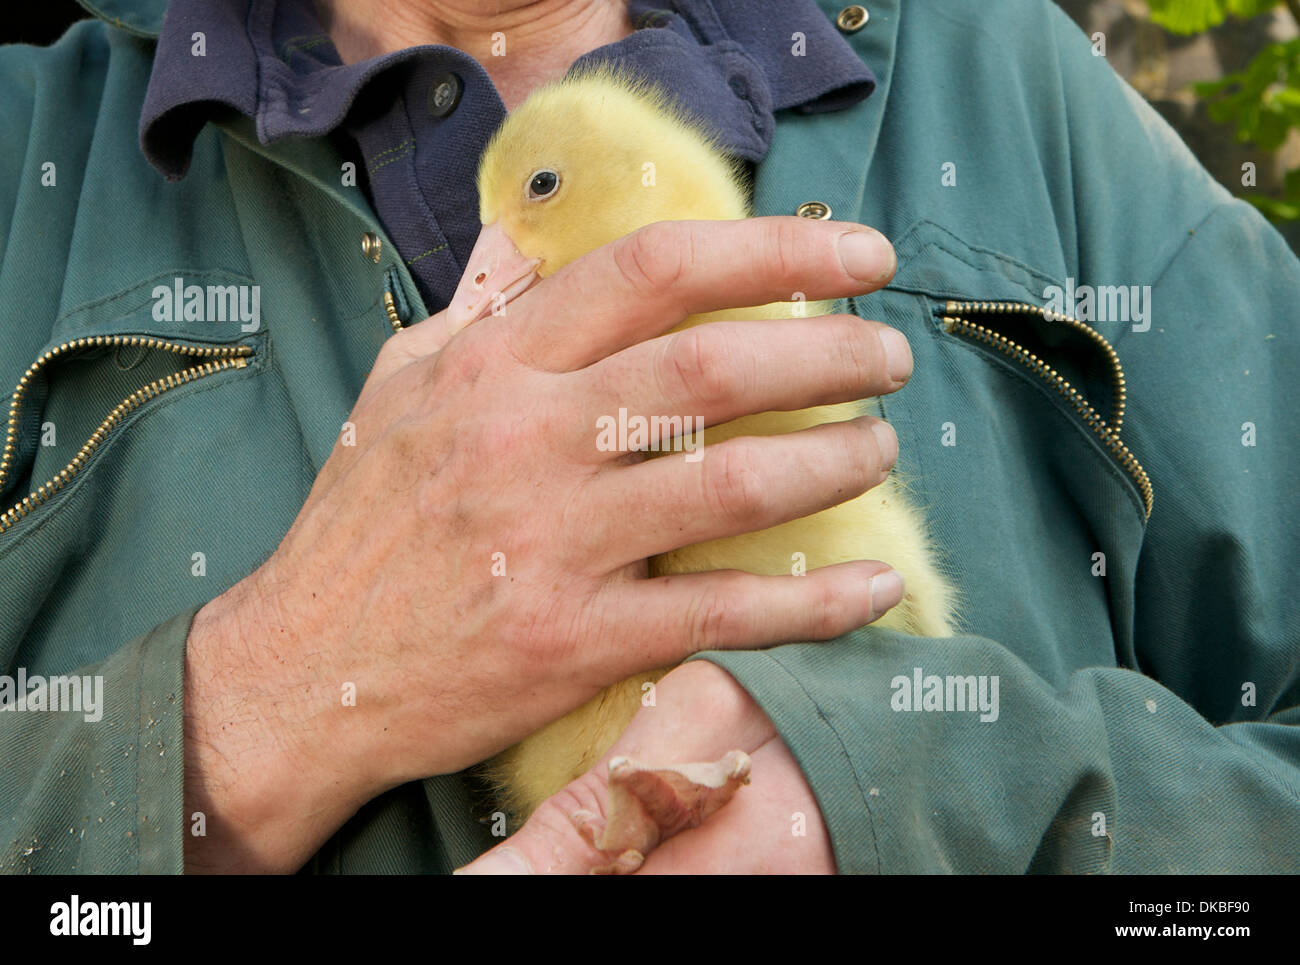 Man holding a gosling, Herefordshire, UK Stock Photo